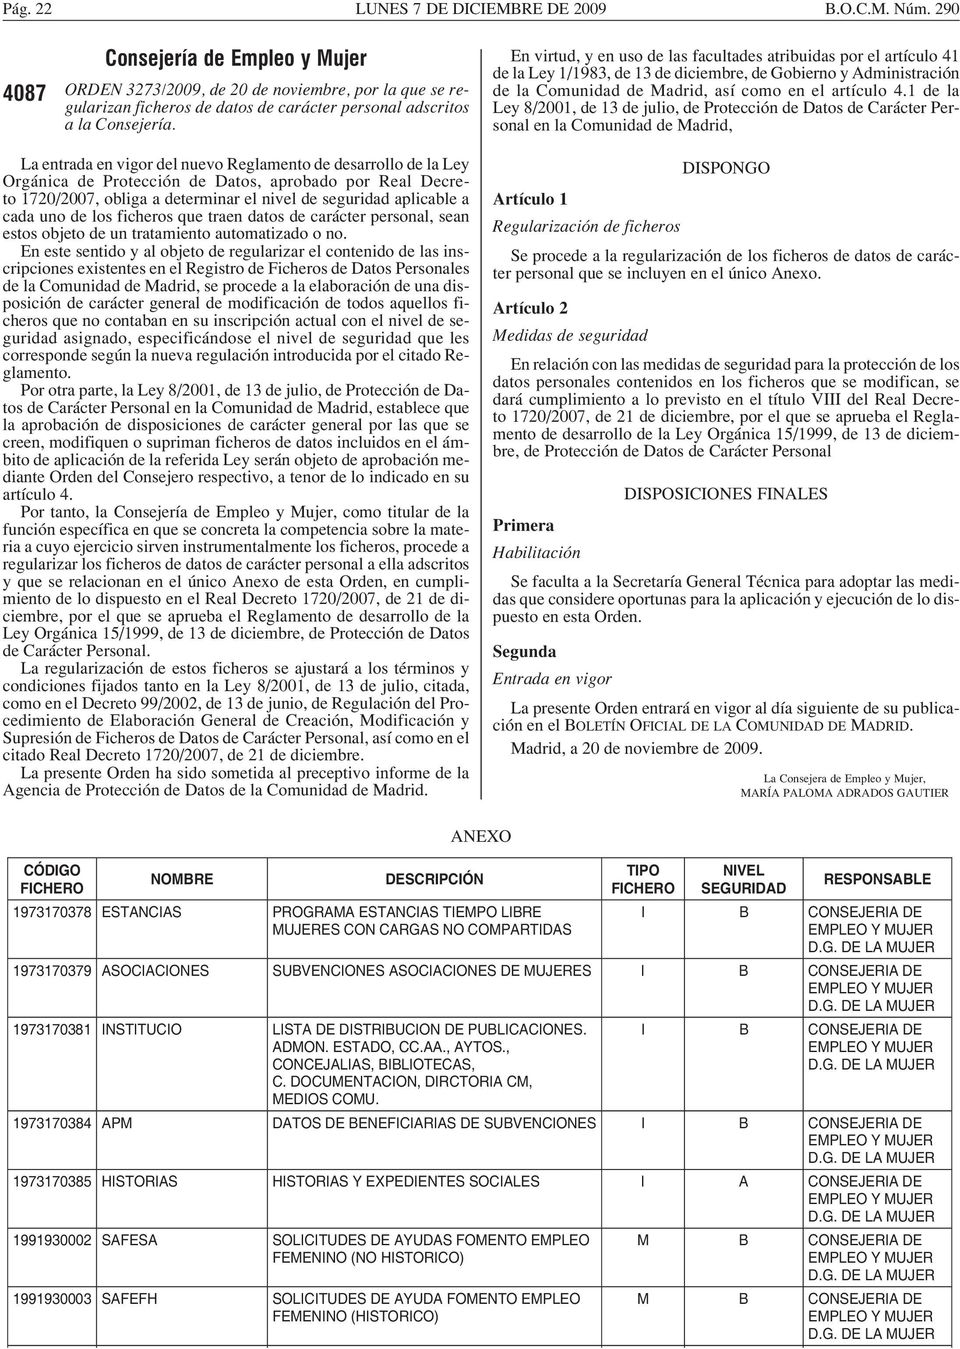 1 de la Ley 8/2001, de 13 de julio, de Protección de Datos de Carácter Personal en la Comunidad de Madrid, La entrada en vigor del nuevo Reglamento de desarrollo de la Ley Orgánica de Protección de